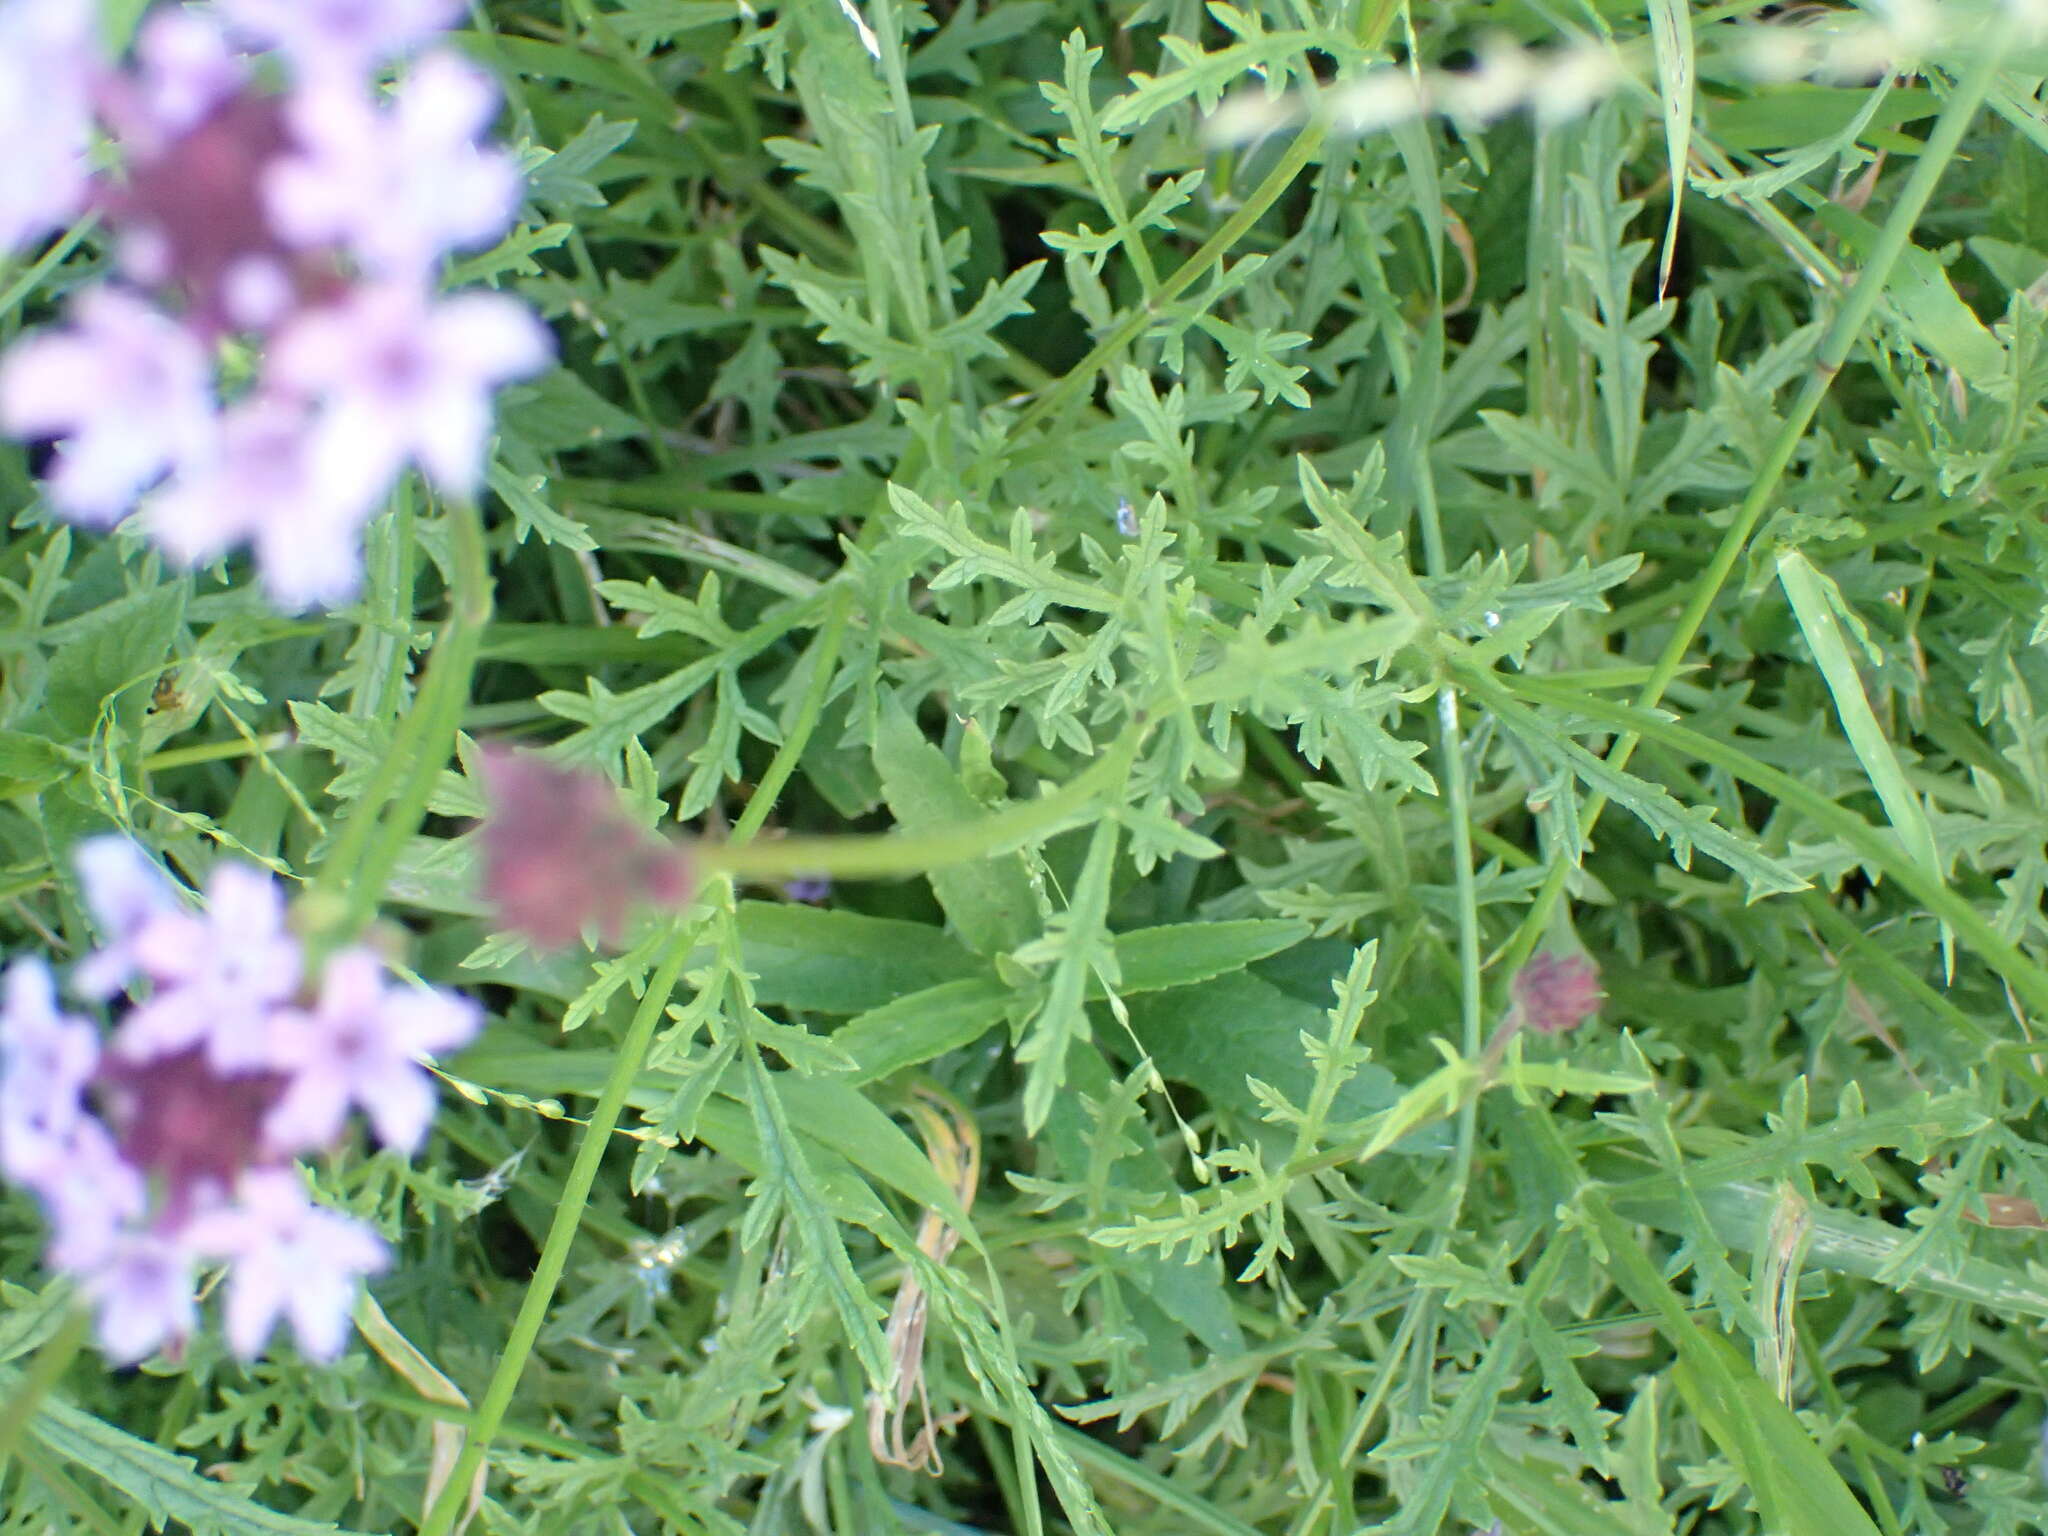 Sivun Glandularia lilacina (Greene) Umber kuva